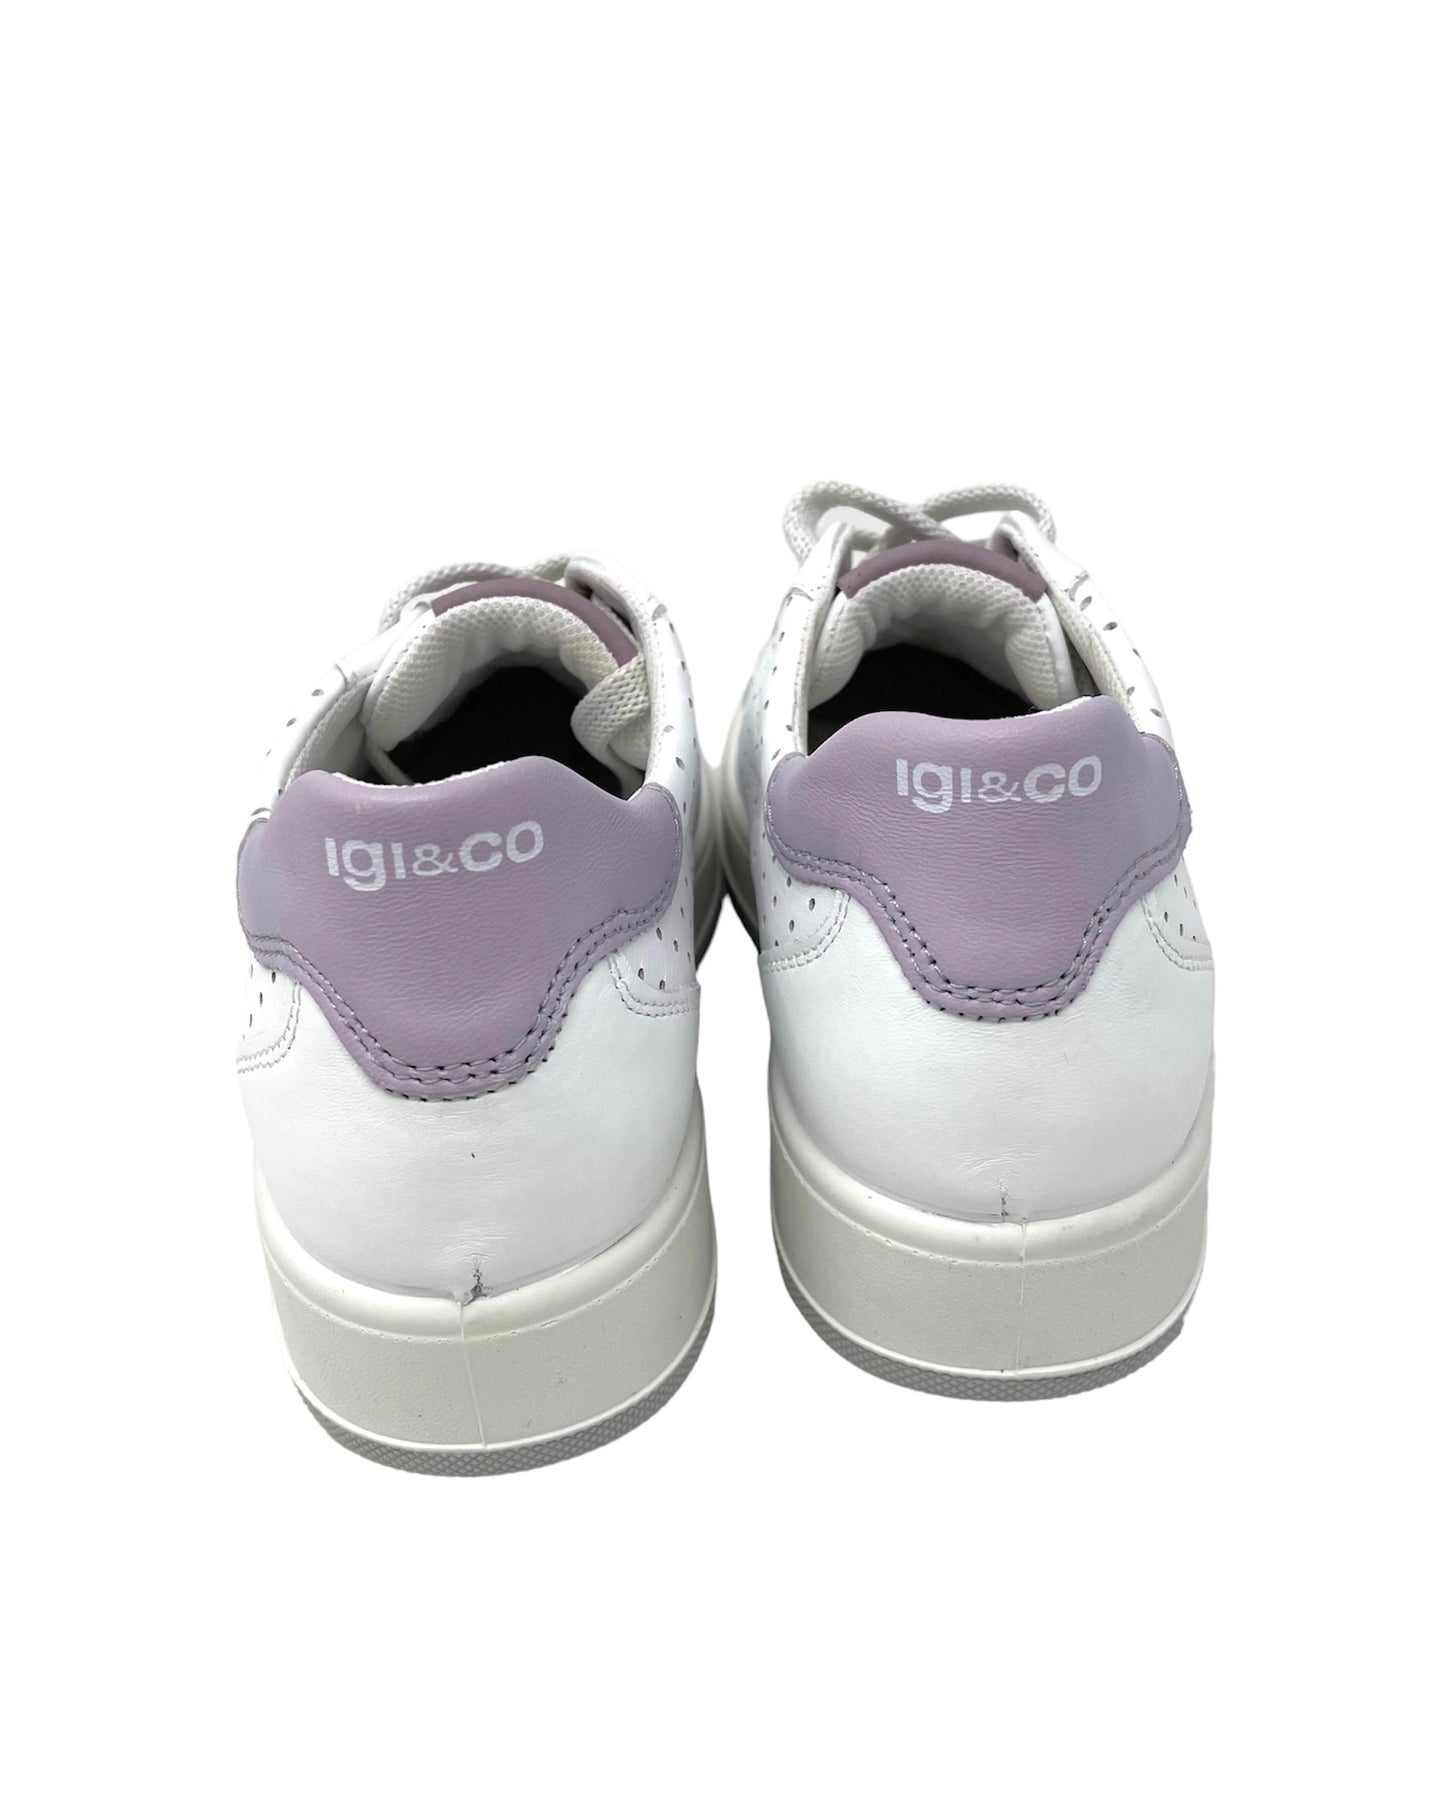 Sneakers Ava fondo traforato nappa bianco viola -3657022